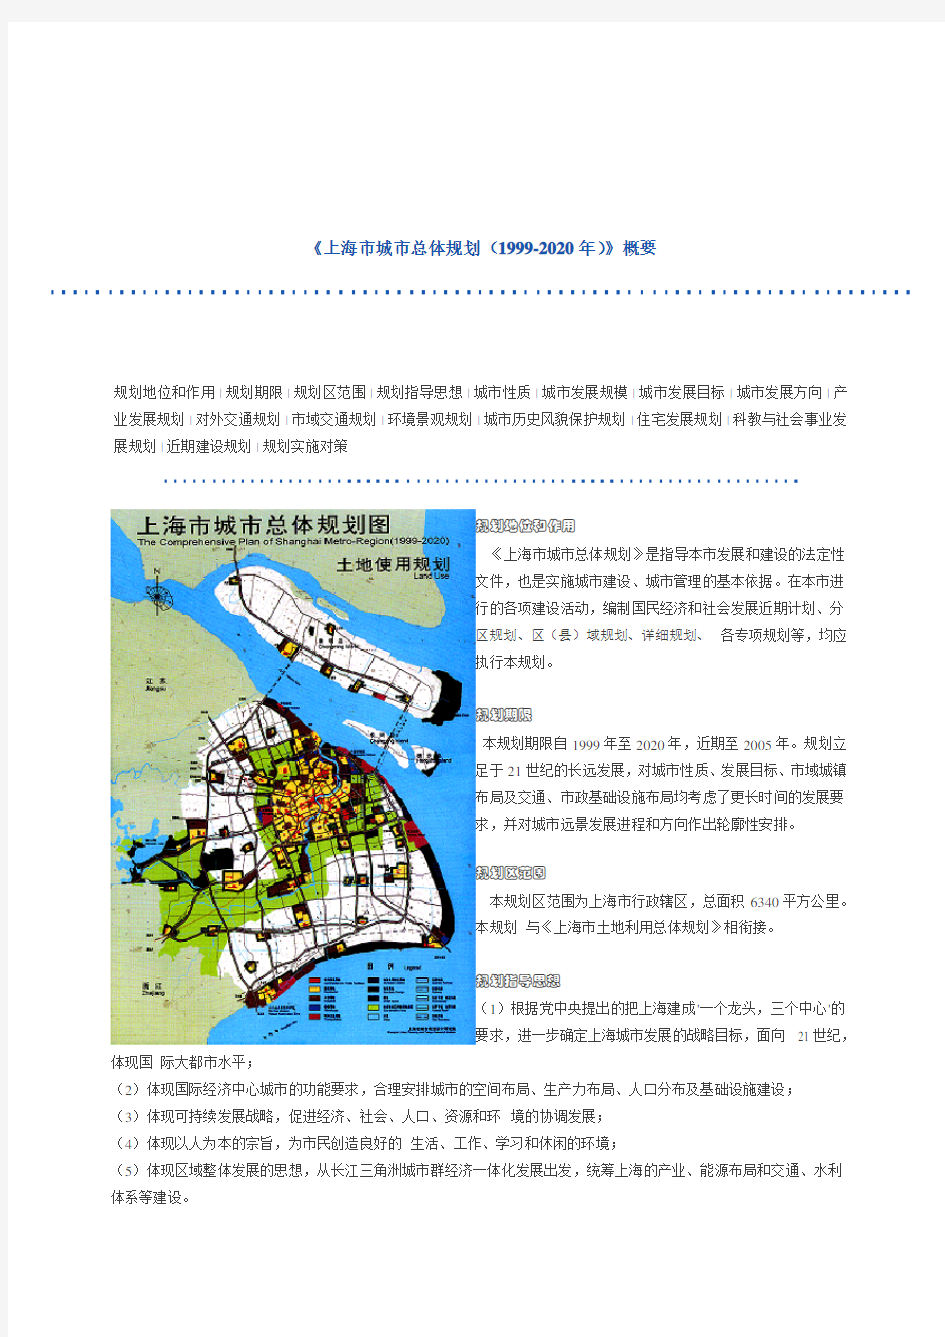 《上海市城市总体规划(1999-2020年)》概要